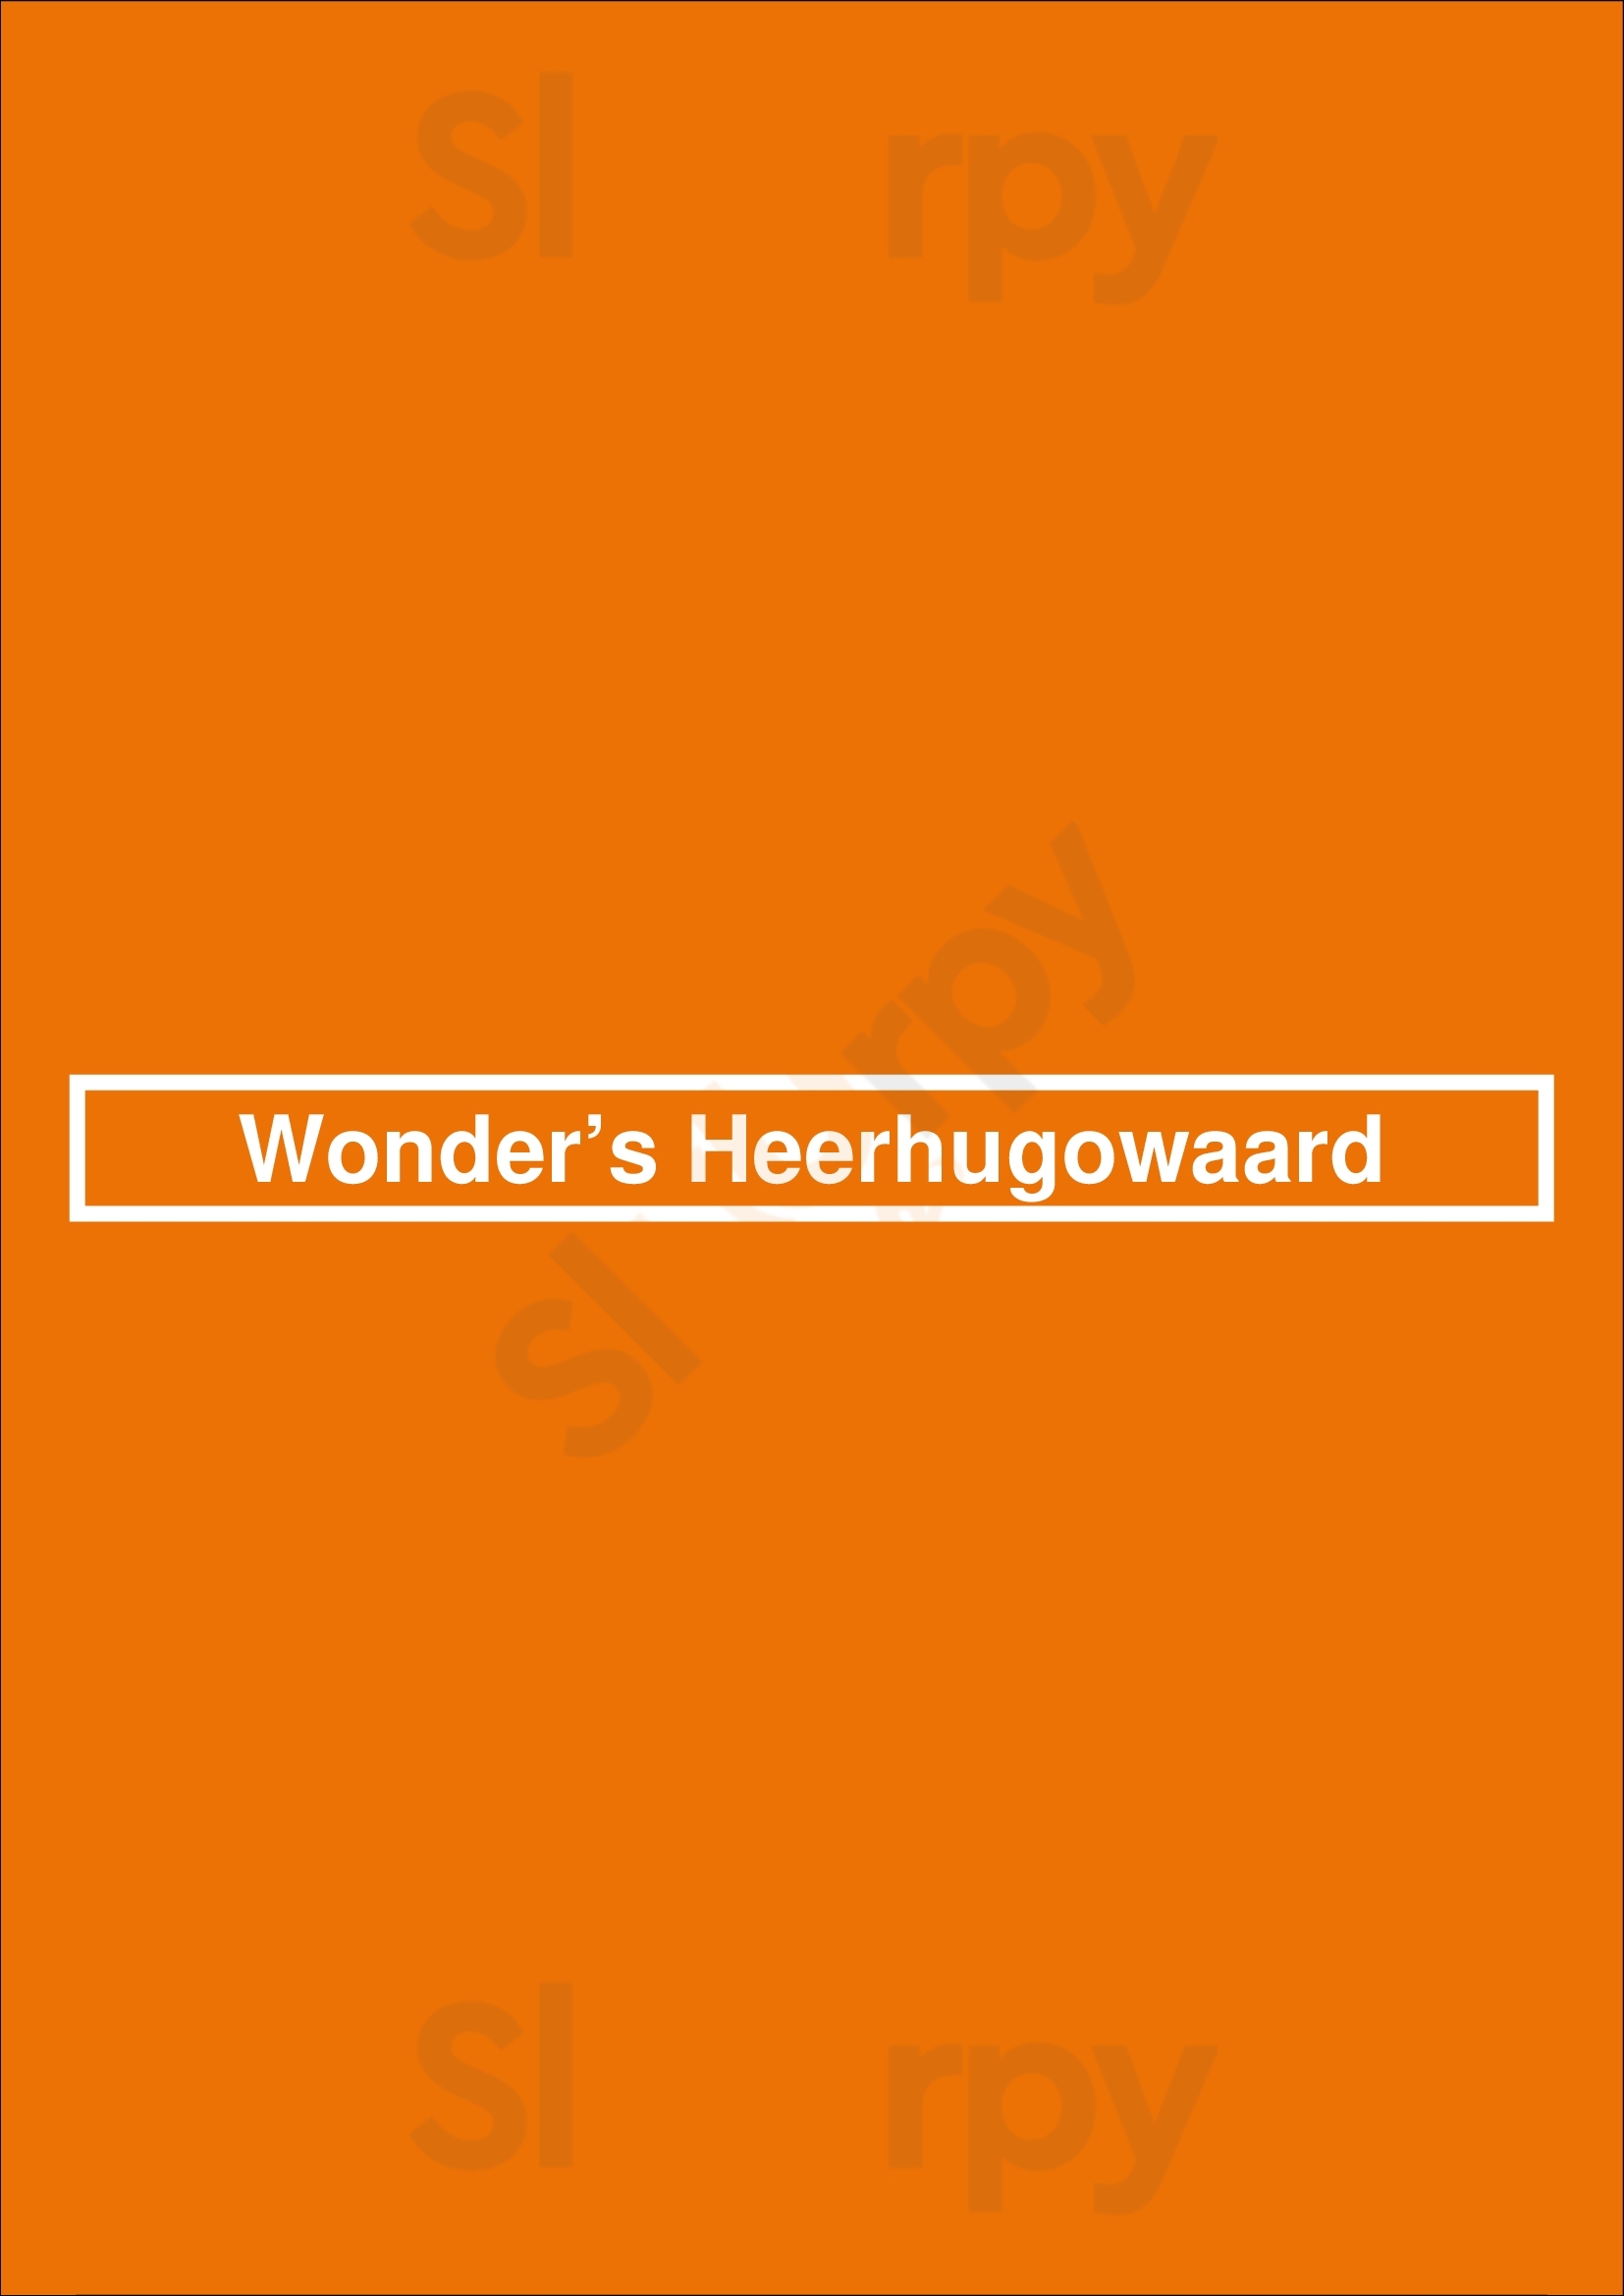 Wonder’s Heerhugowaard Heerhugowaard Menu - 1